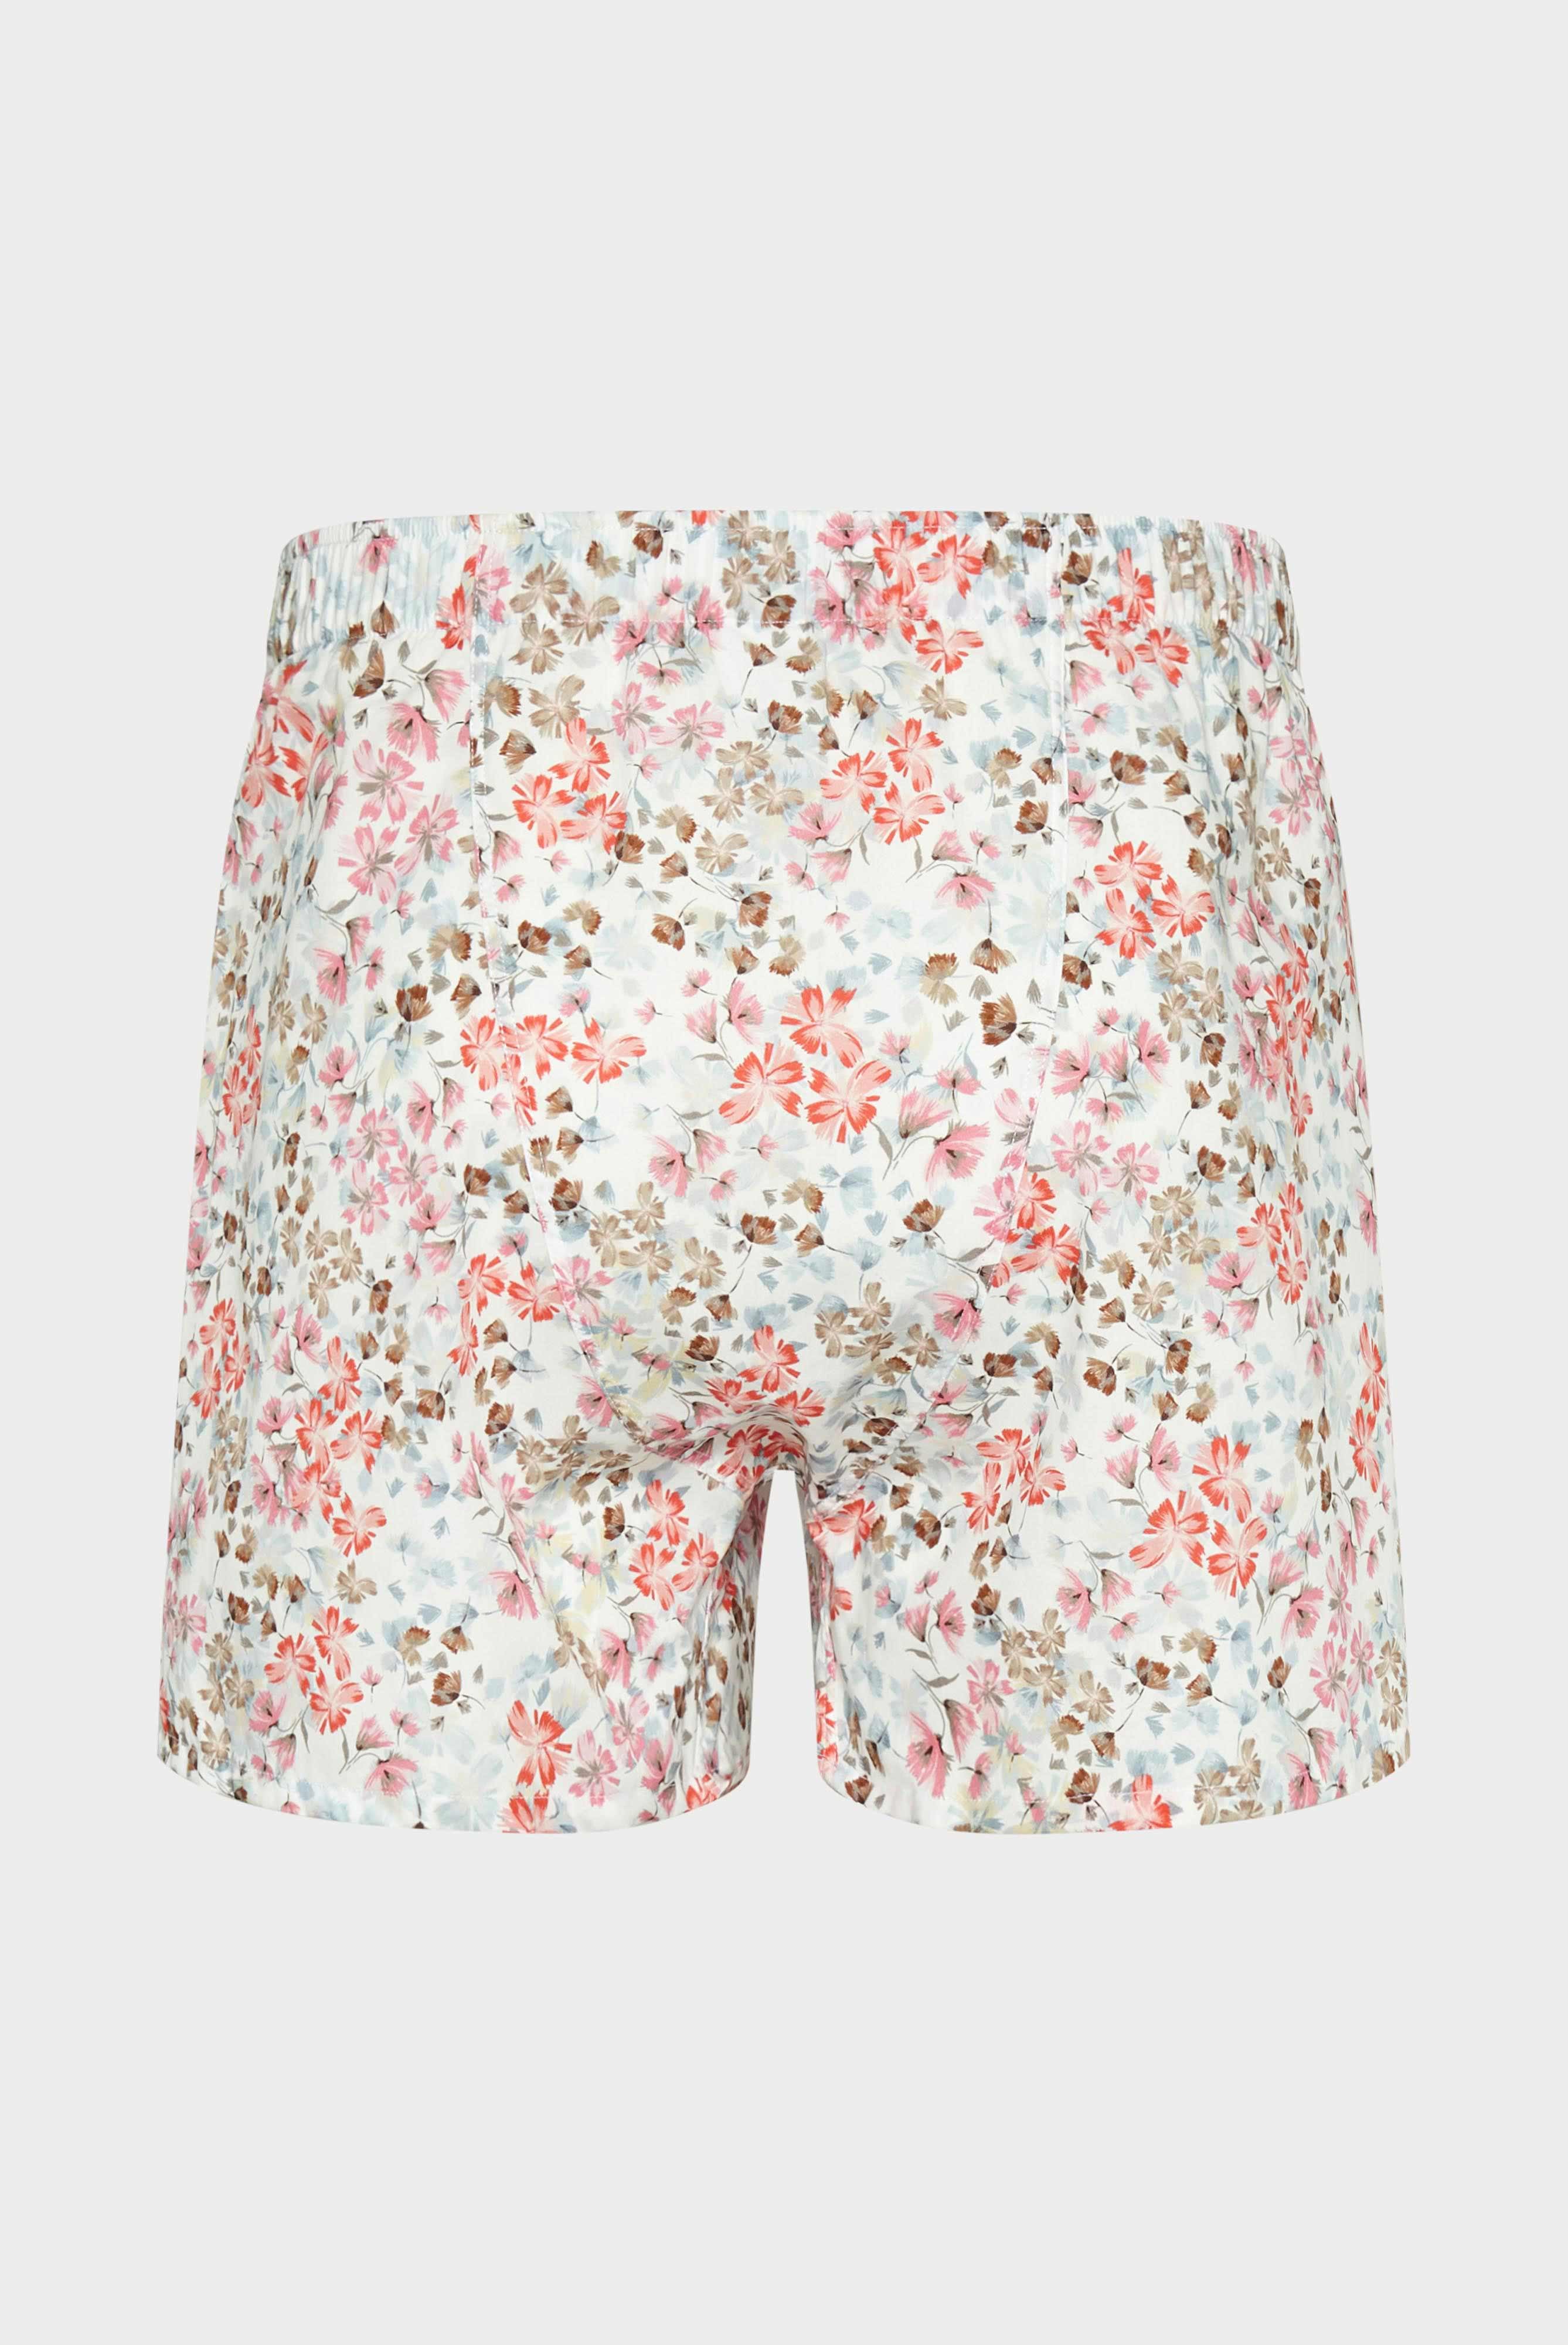 Underwear+Flower-Printed Poplin Boxer Shorts+91.1100..170252.534.54